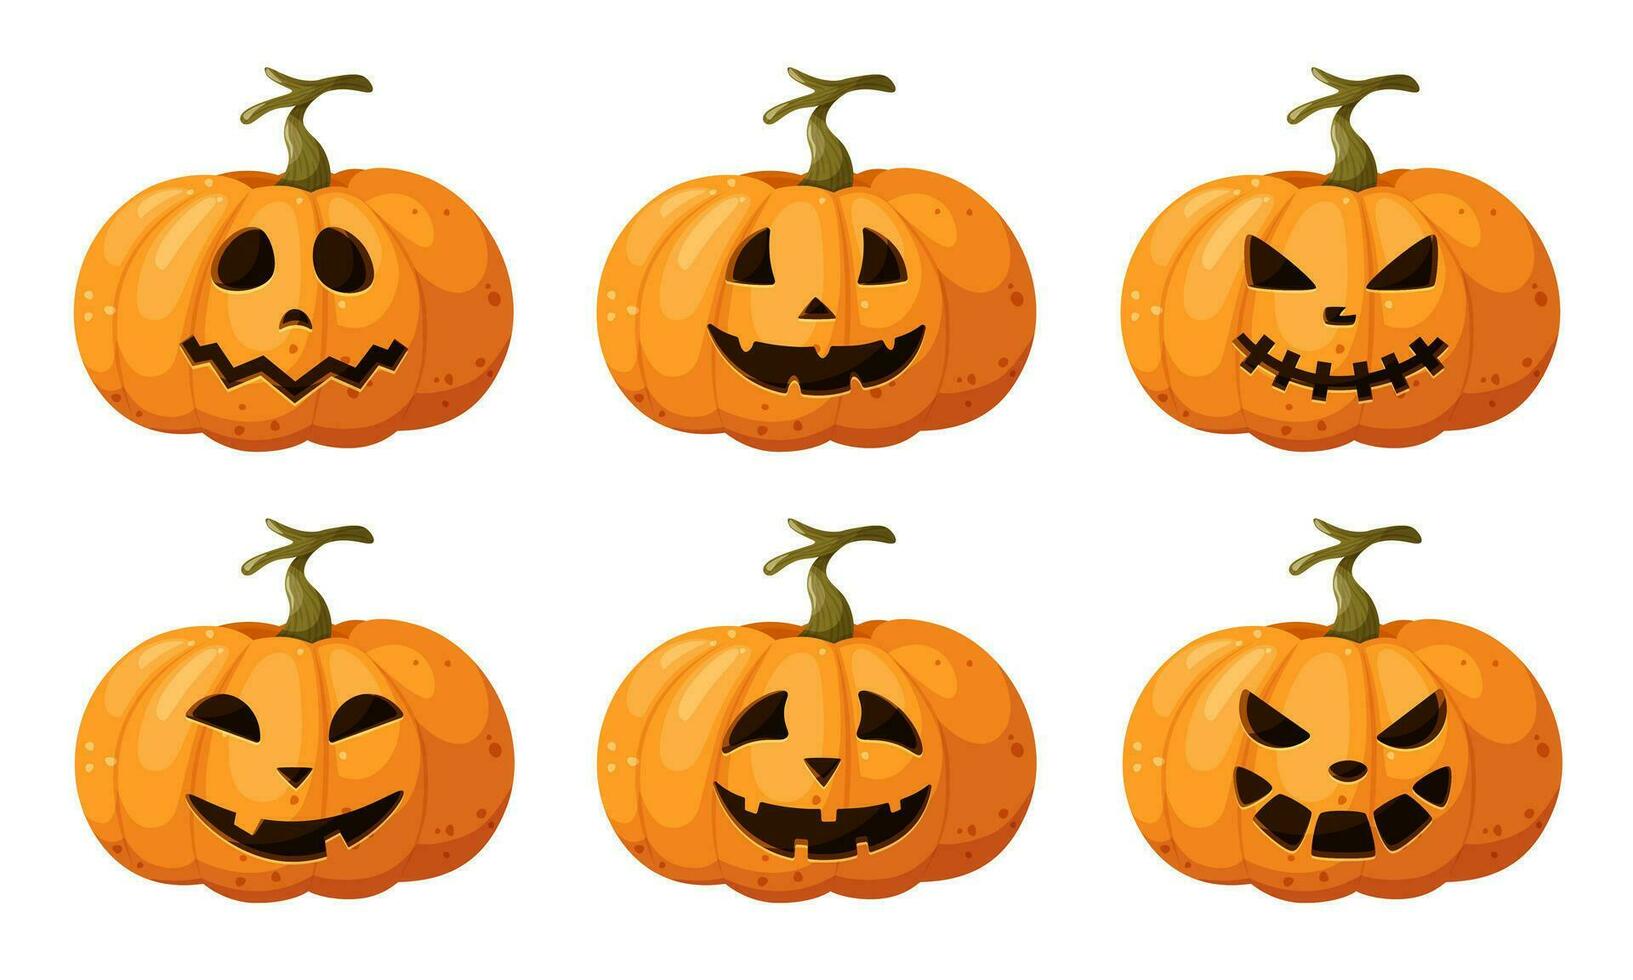 verzameling van halloween pompoenen met gesneden gezicht silhouetten. pompoen voor halloween met verschillend emoties, naar creëren een banier ontwerp, ansichtkaarten, affiches. vector